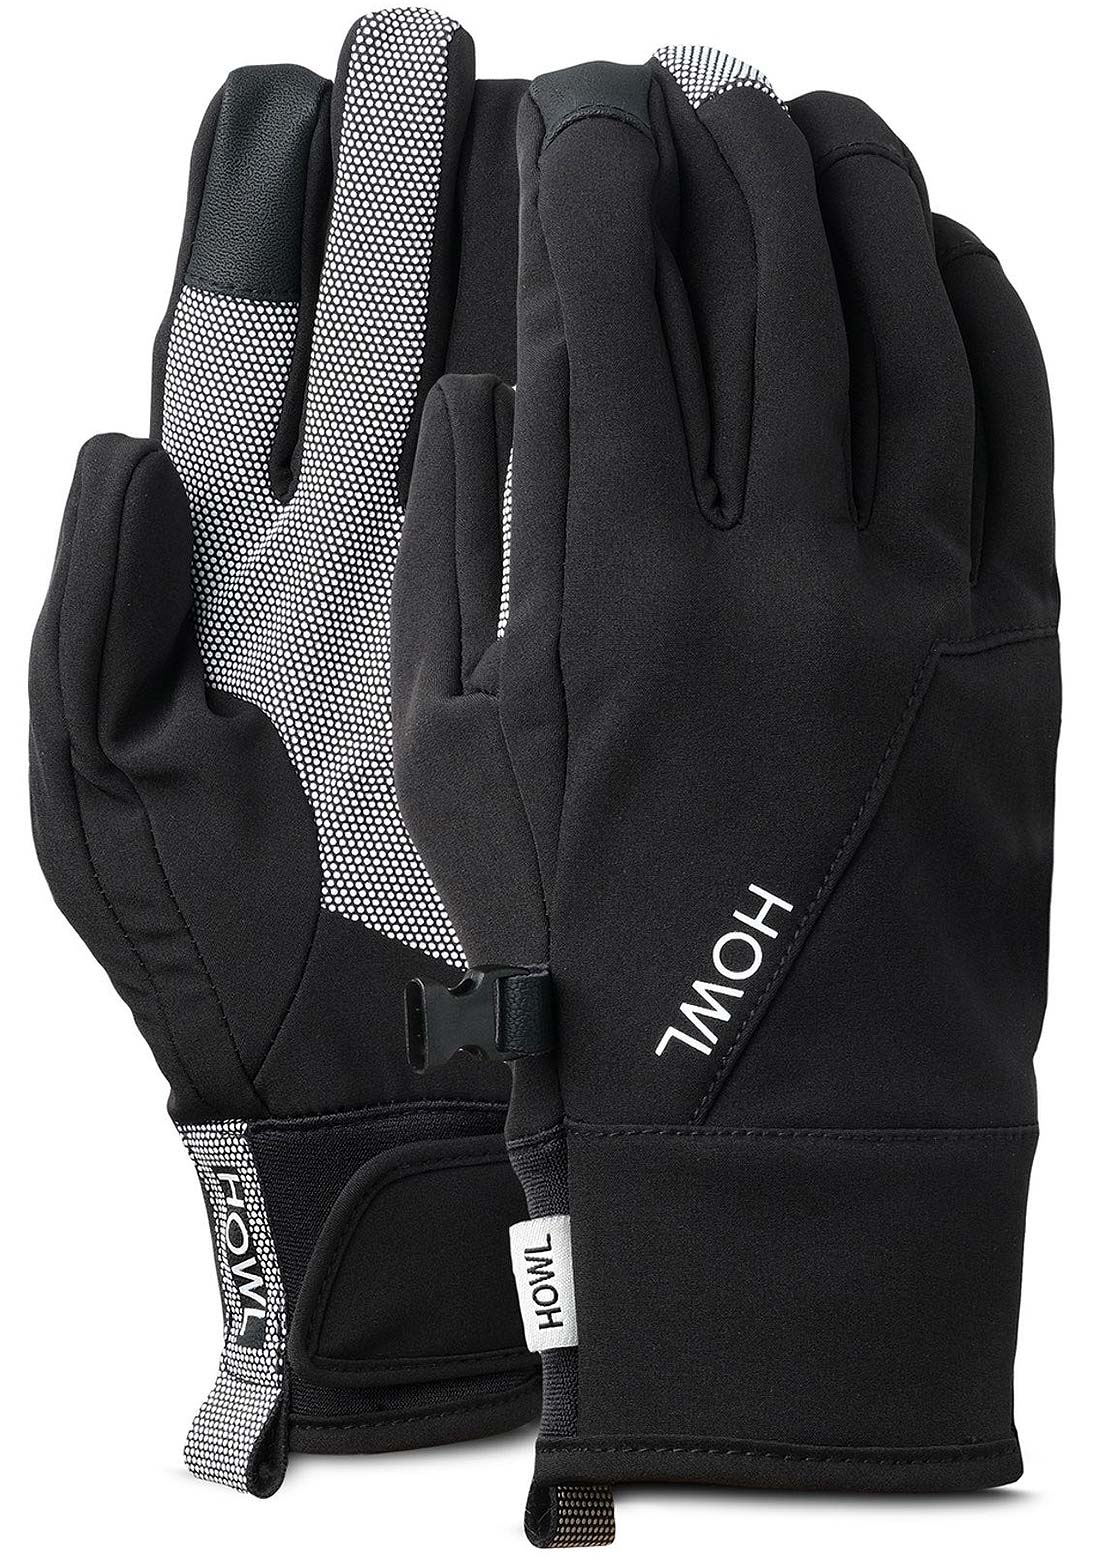 HOWL Tech Glove Black